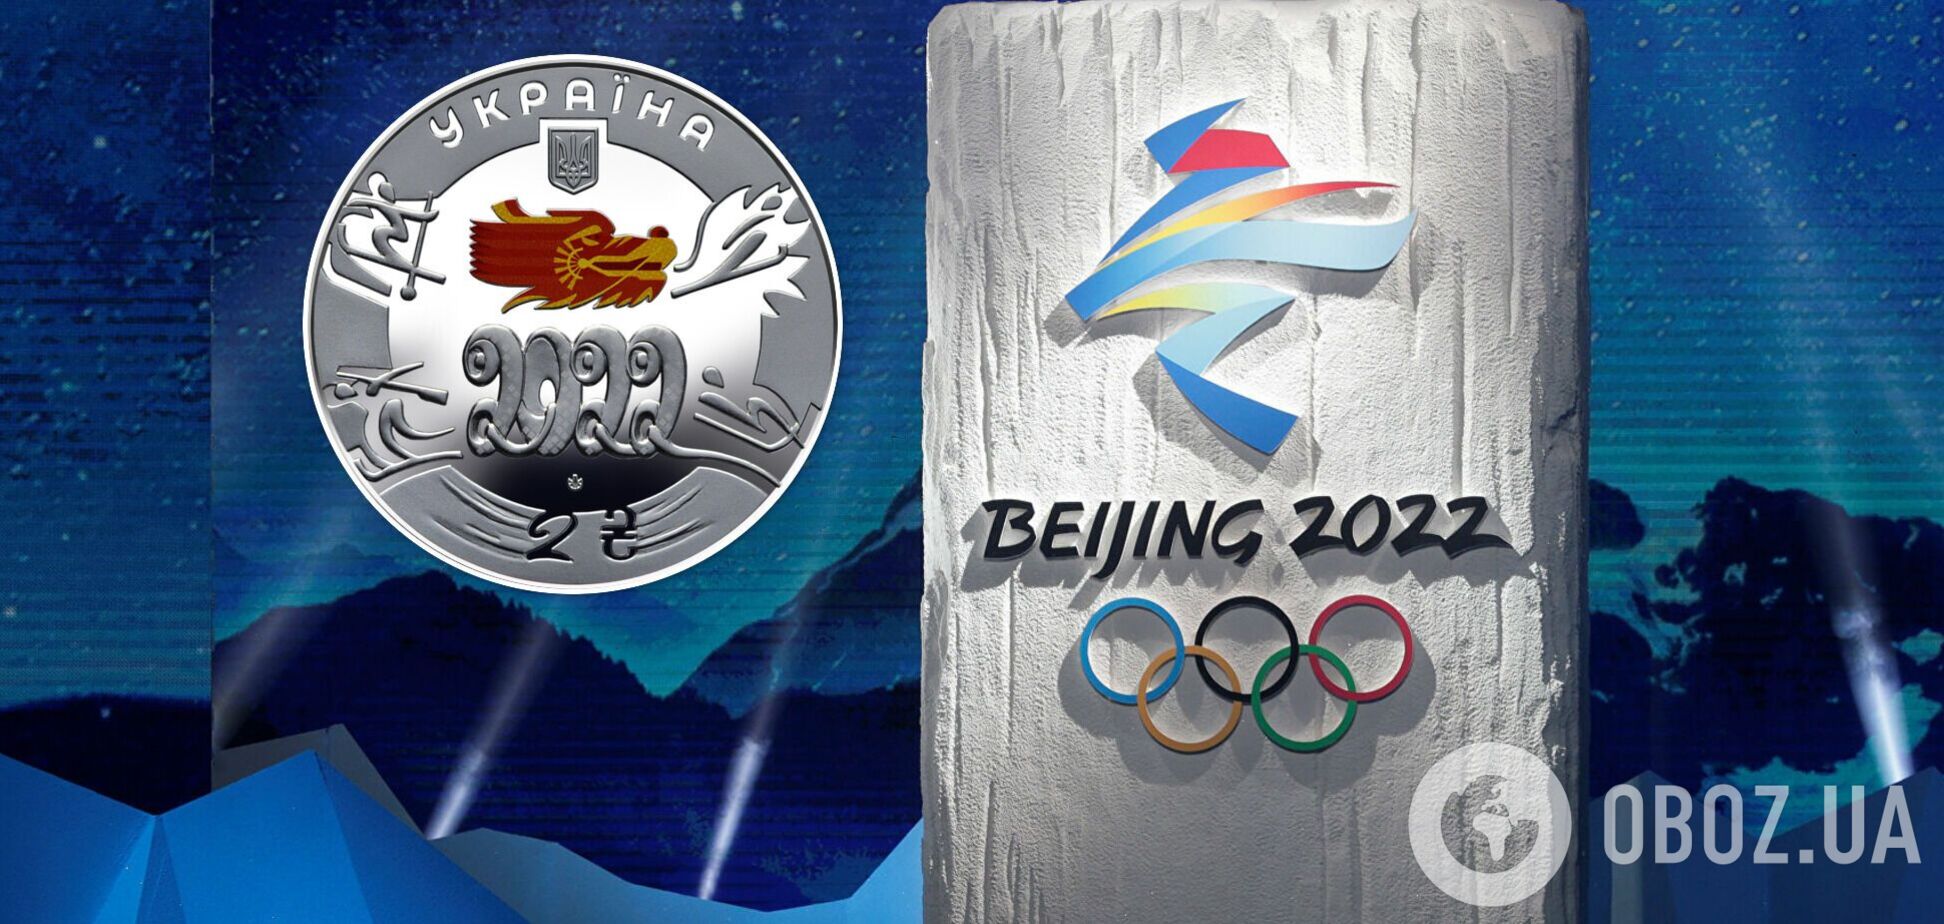 НБУ выпустит монеты в честь Олимпийских игр